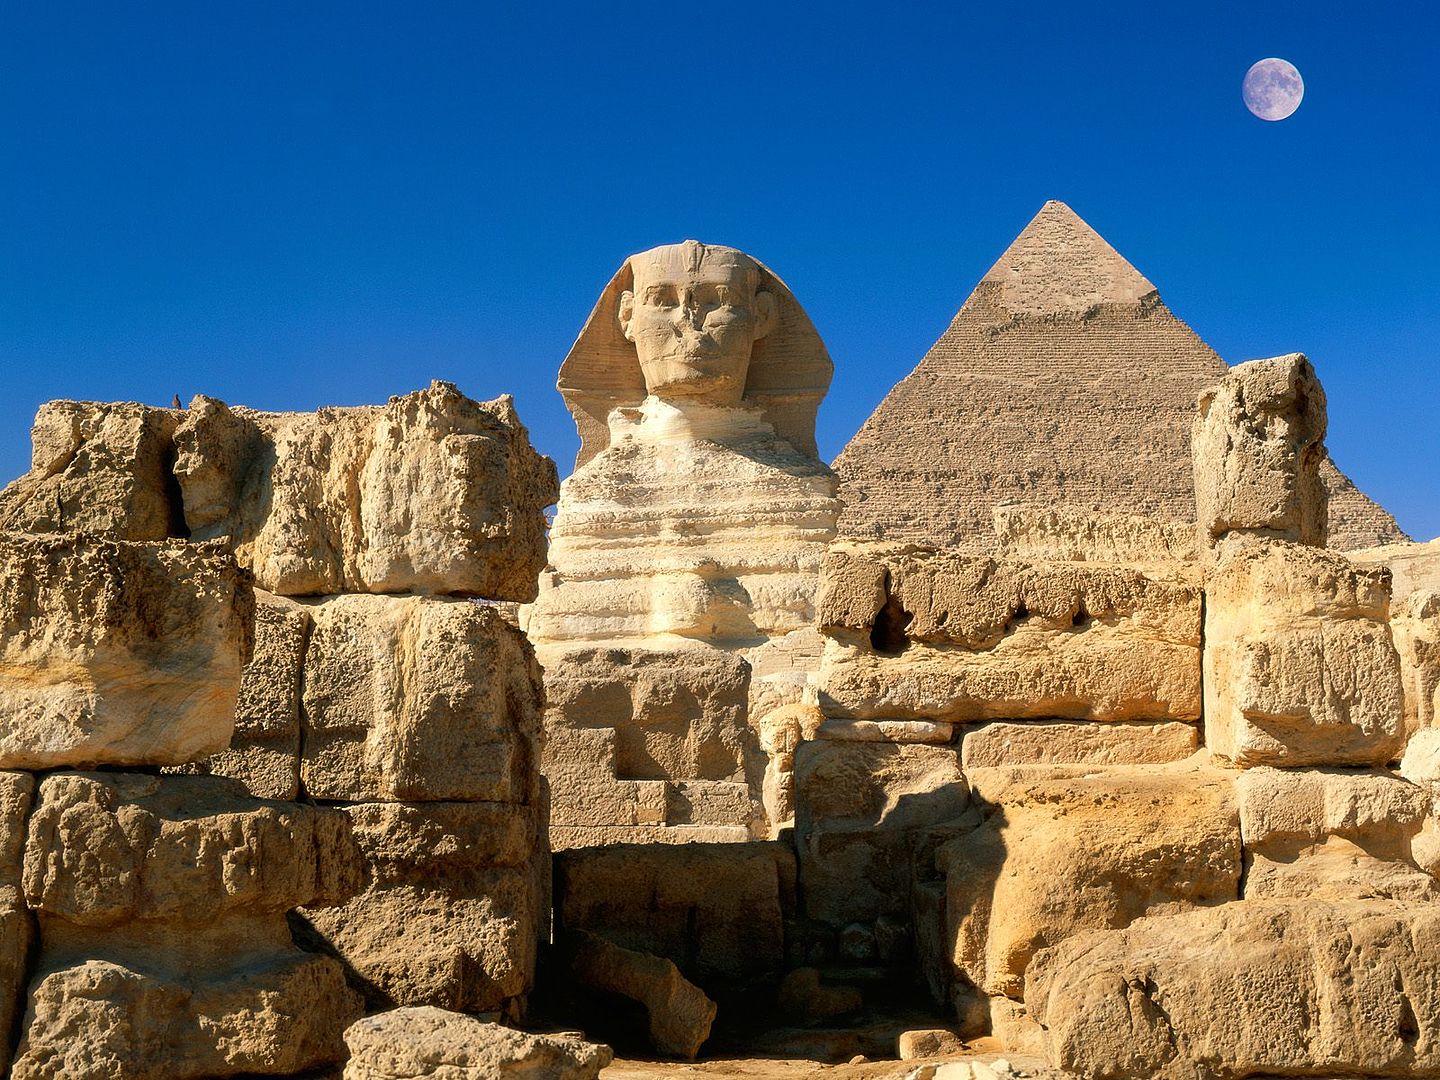 صور وخلفيات لأهرامات الجيزة وأبو الهول Pyramids of Giza and the Sphinx 2910